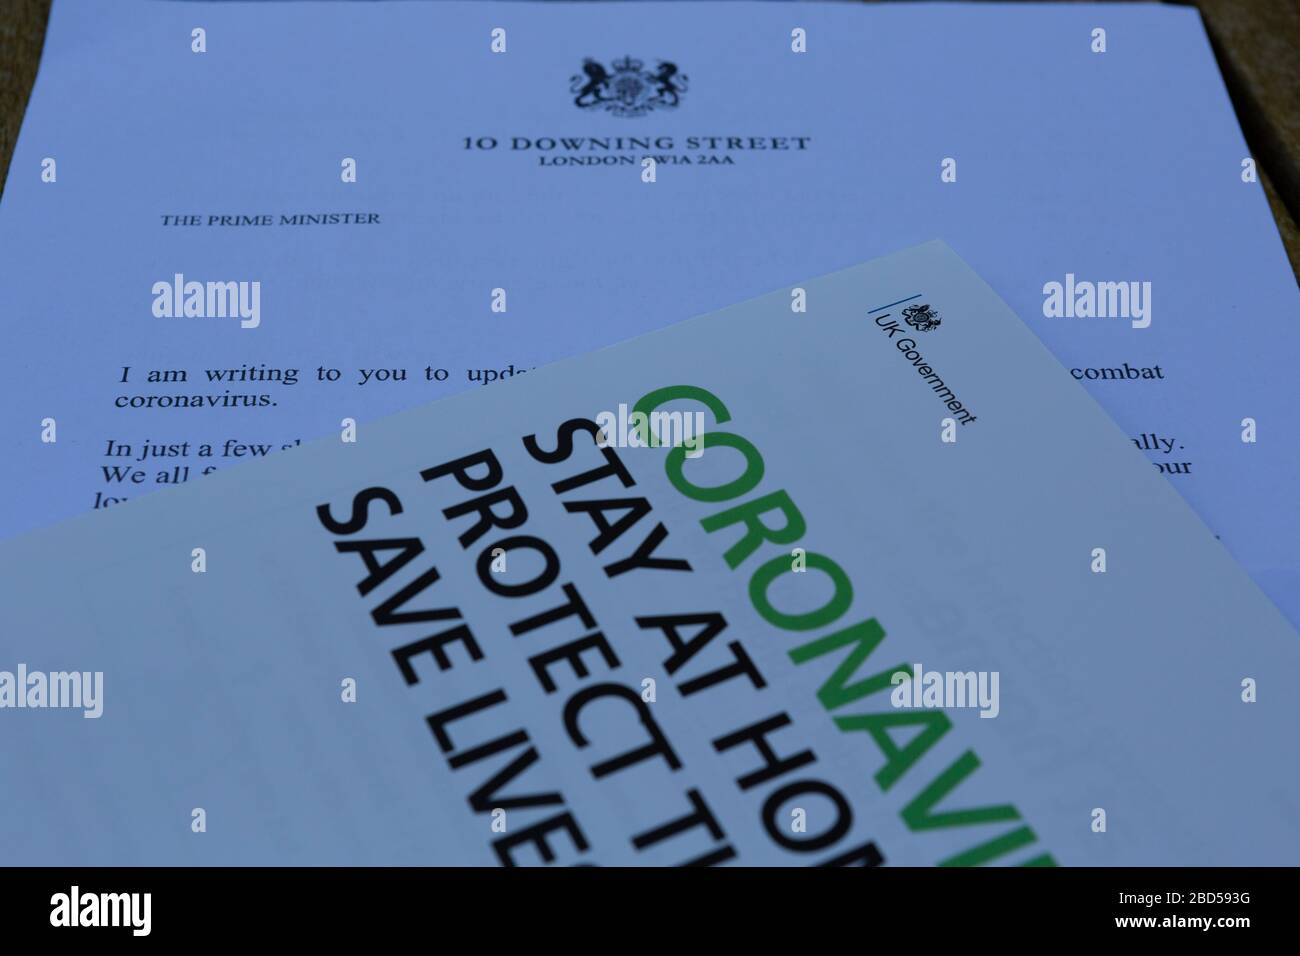 Carta y panfleto enviados por el primer ministro del Reino Unido, Boris Johnson, a todas las casas del Reino Unido sobre la pandemia del coronavirus Foto de stock